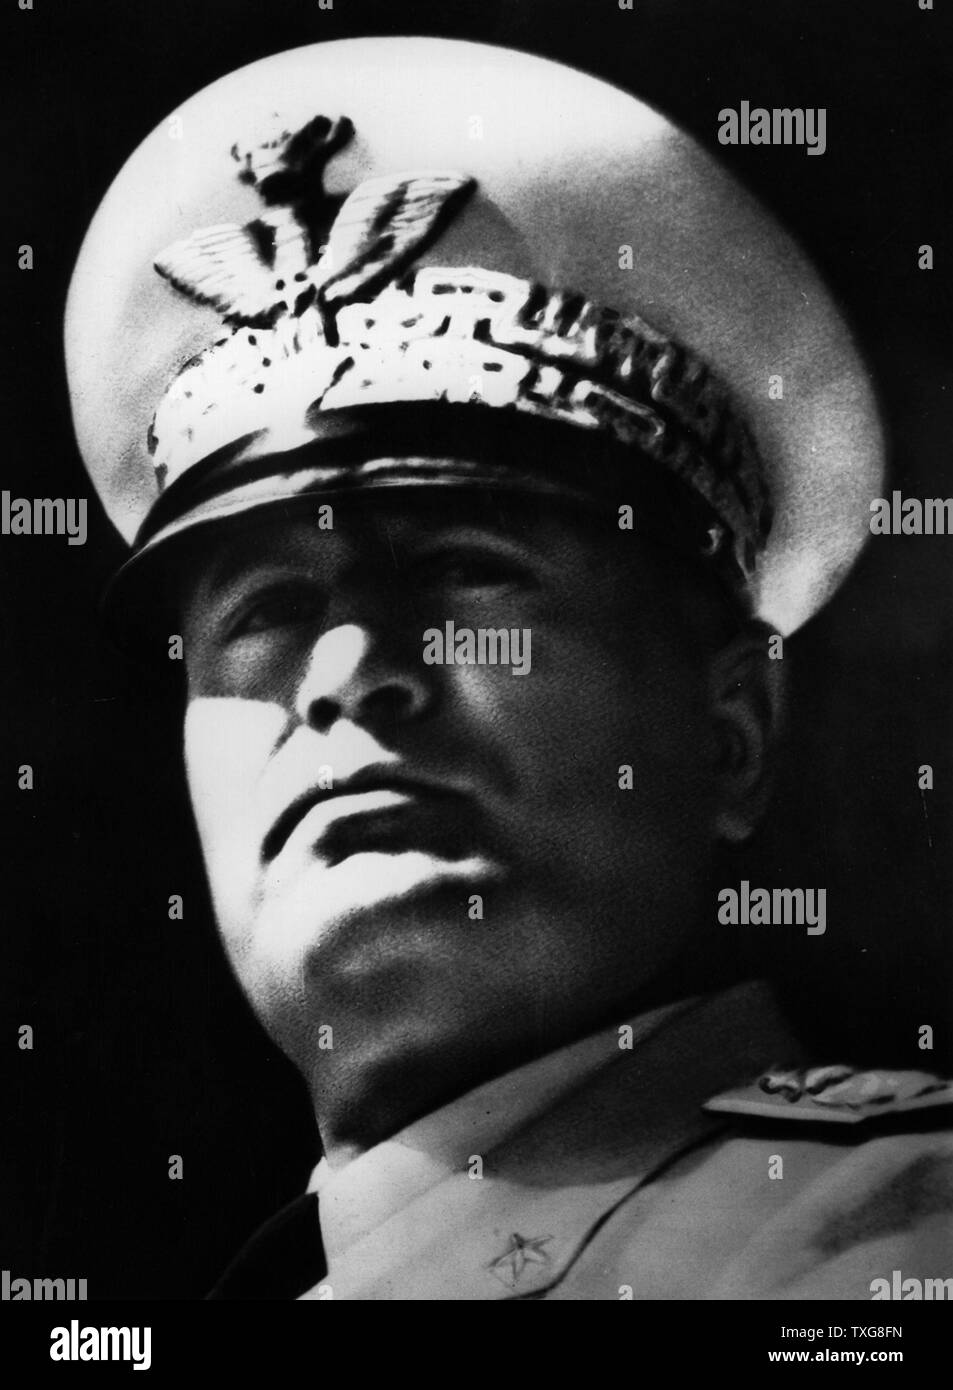 Benito Mussolini, homme politique italien qui a dirigé le parti fasciste National Premier Ministre de l'Italie en 1922 et a commencé à utiliser le titre Il Duce en 1925 Banque D'Images